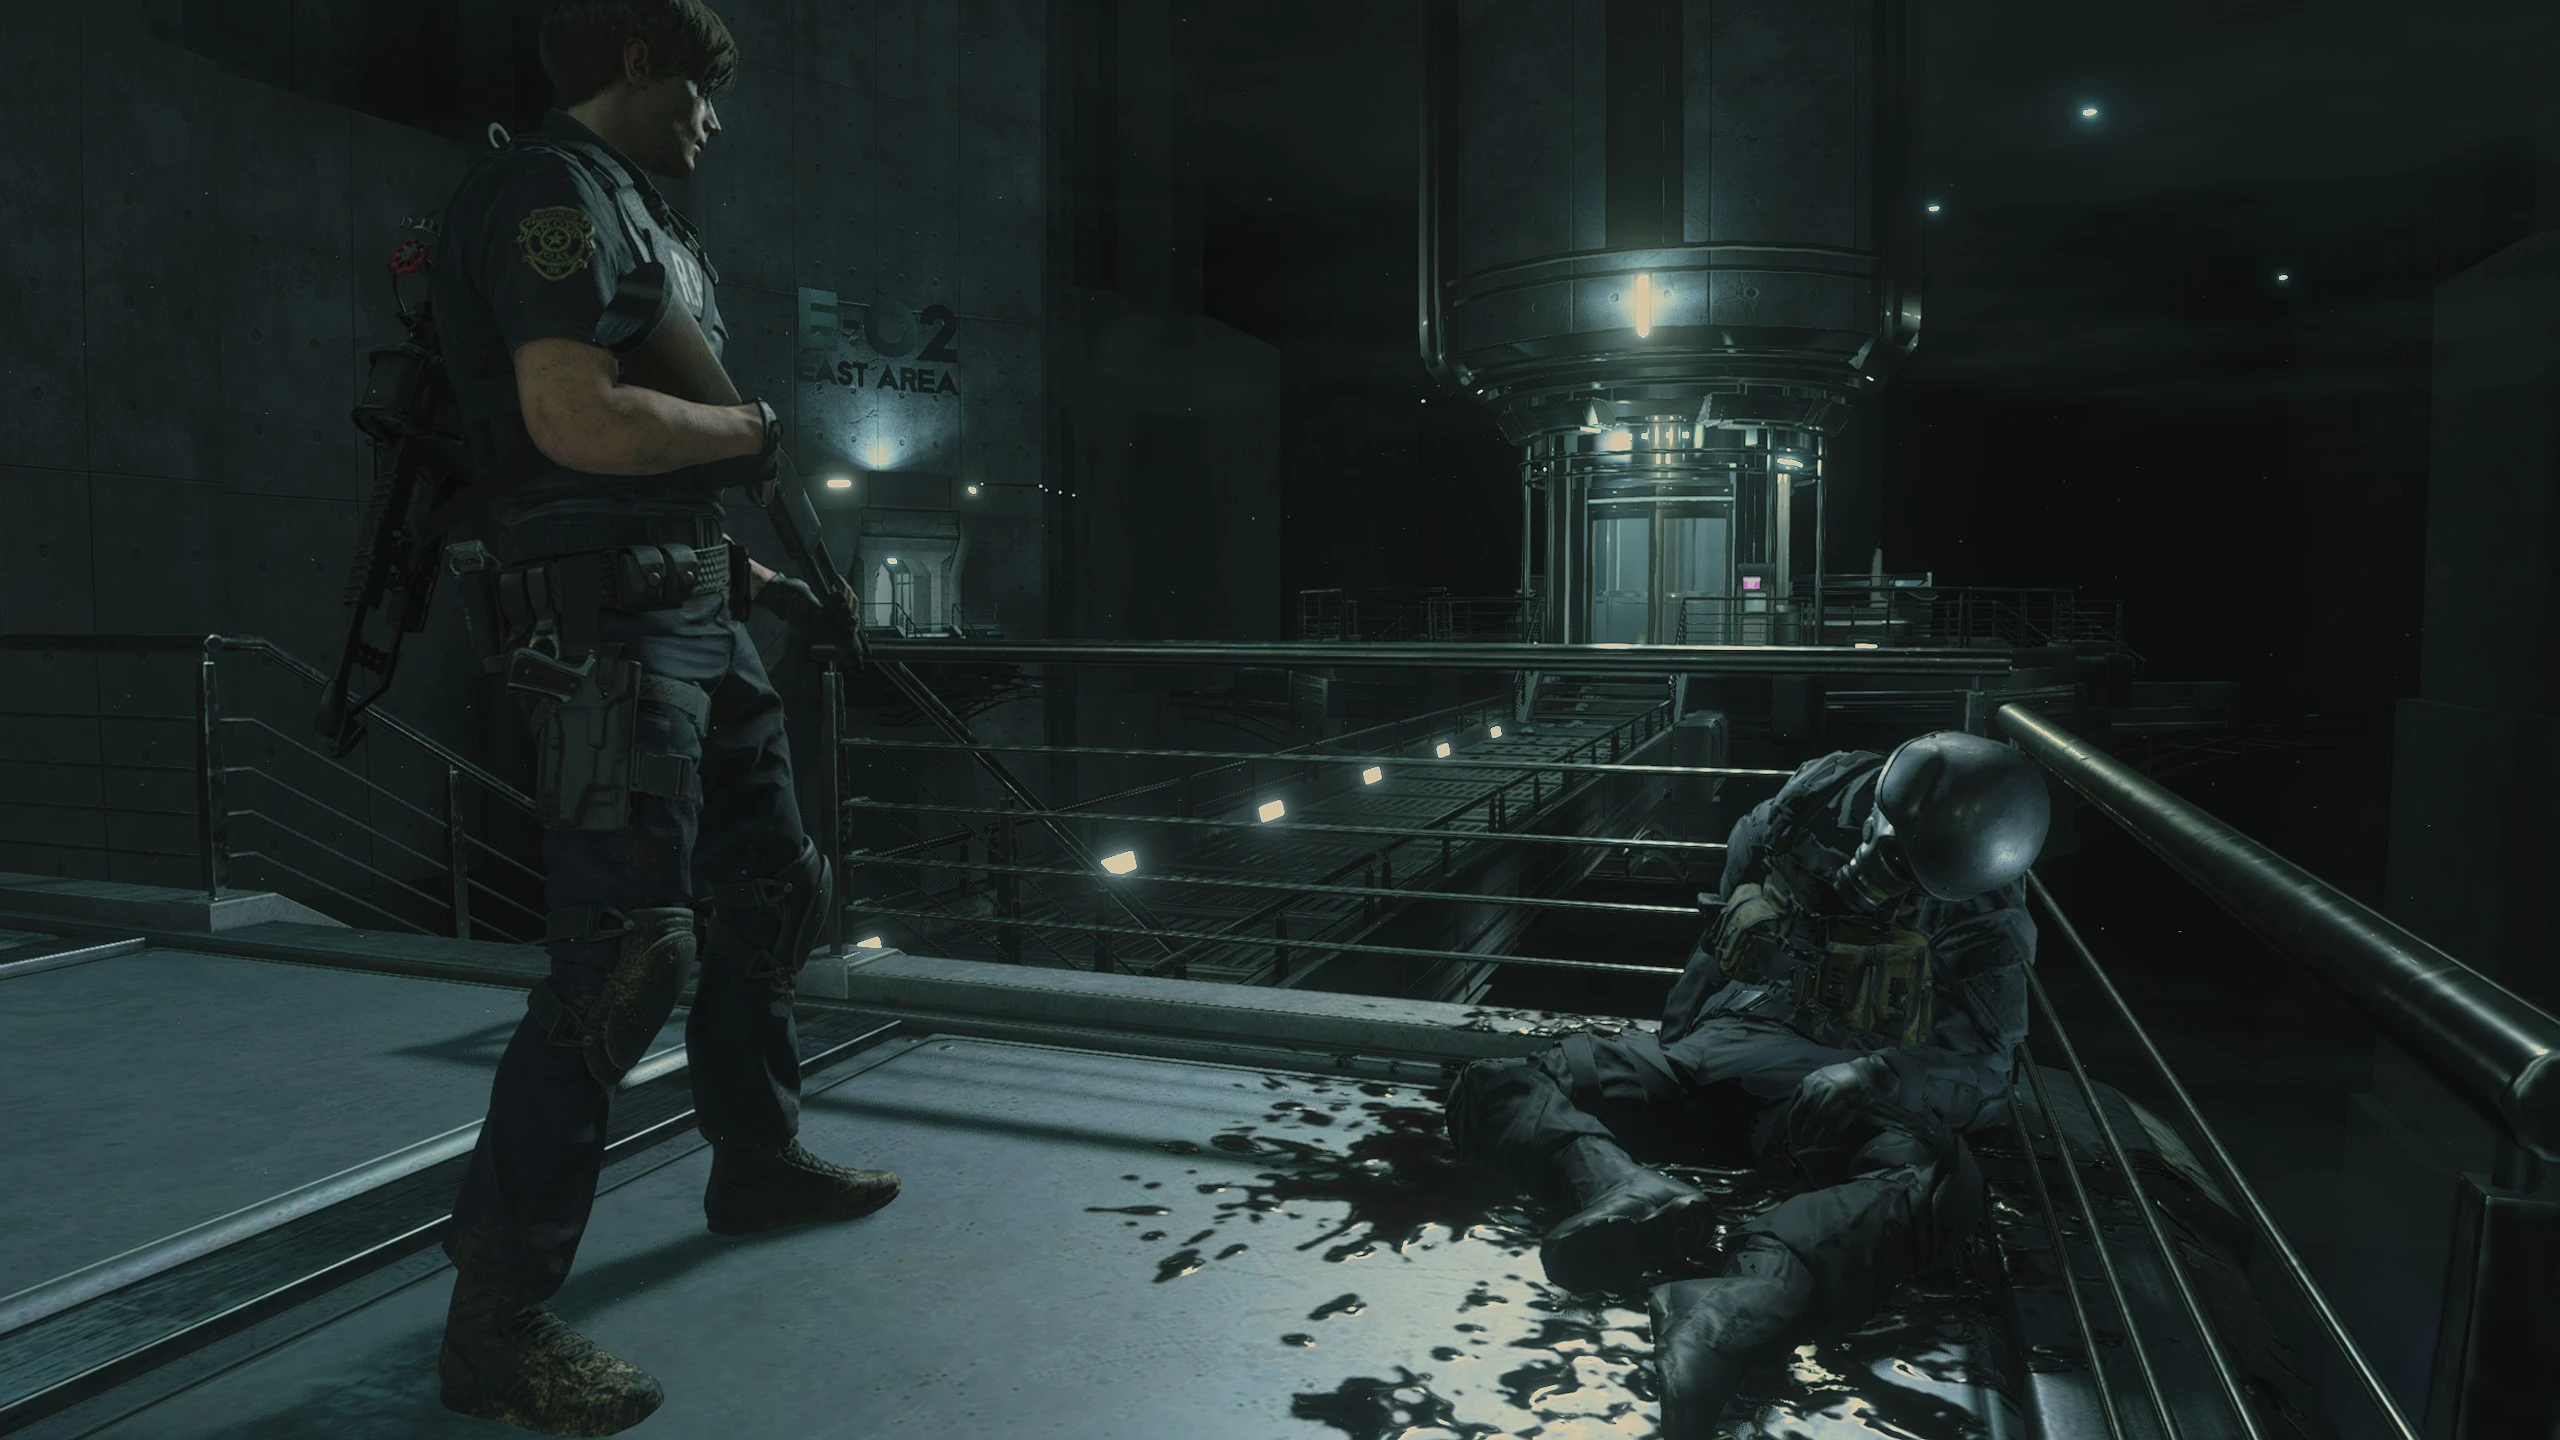 Leon si staglia su un soldato con elmetto sanguinante nella mod Resident Evil 2 Remake con telecamera fissa